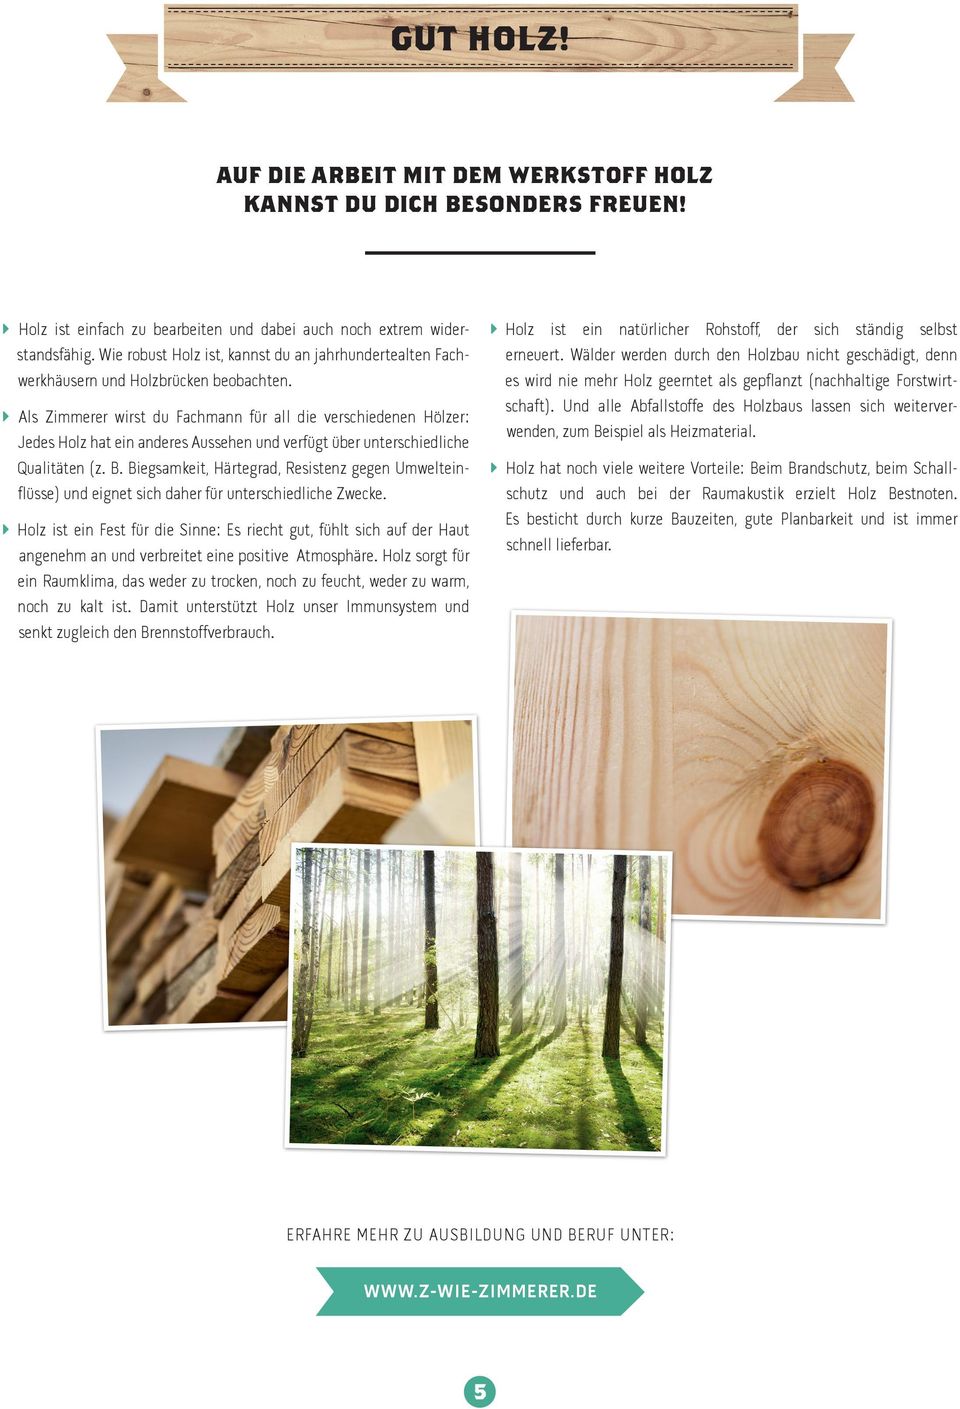 Als Zimmerer wirst du Fachmann für all die verschiedenen Hölzer: Jedes Holz hat ein anderes Aussehen und verfügt über unterschiedliche Qualitäten (z. B.